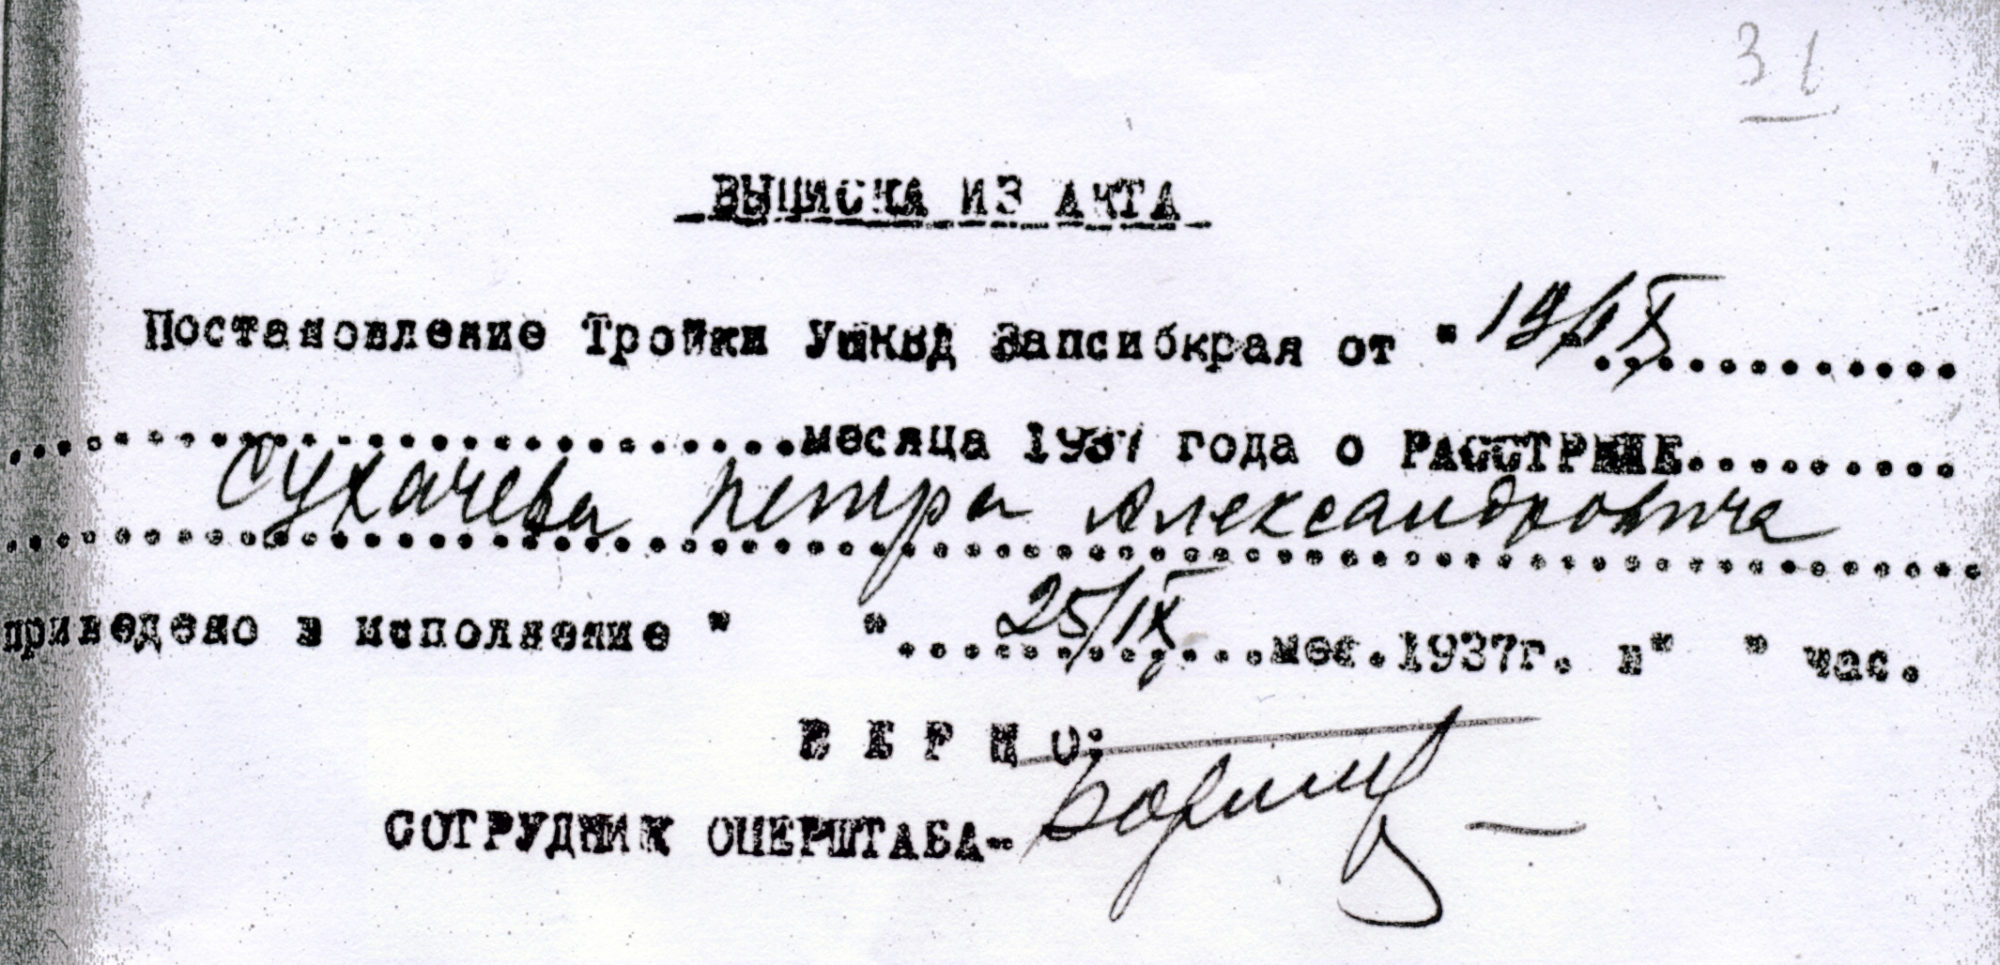 Выписка из акта о расстреле СУХАЧЕВА Петра Александровича, дата: 25 сентября 1937 г. Расстрелян в Томске.